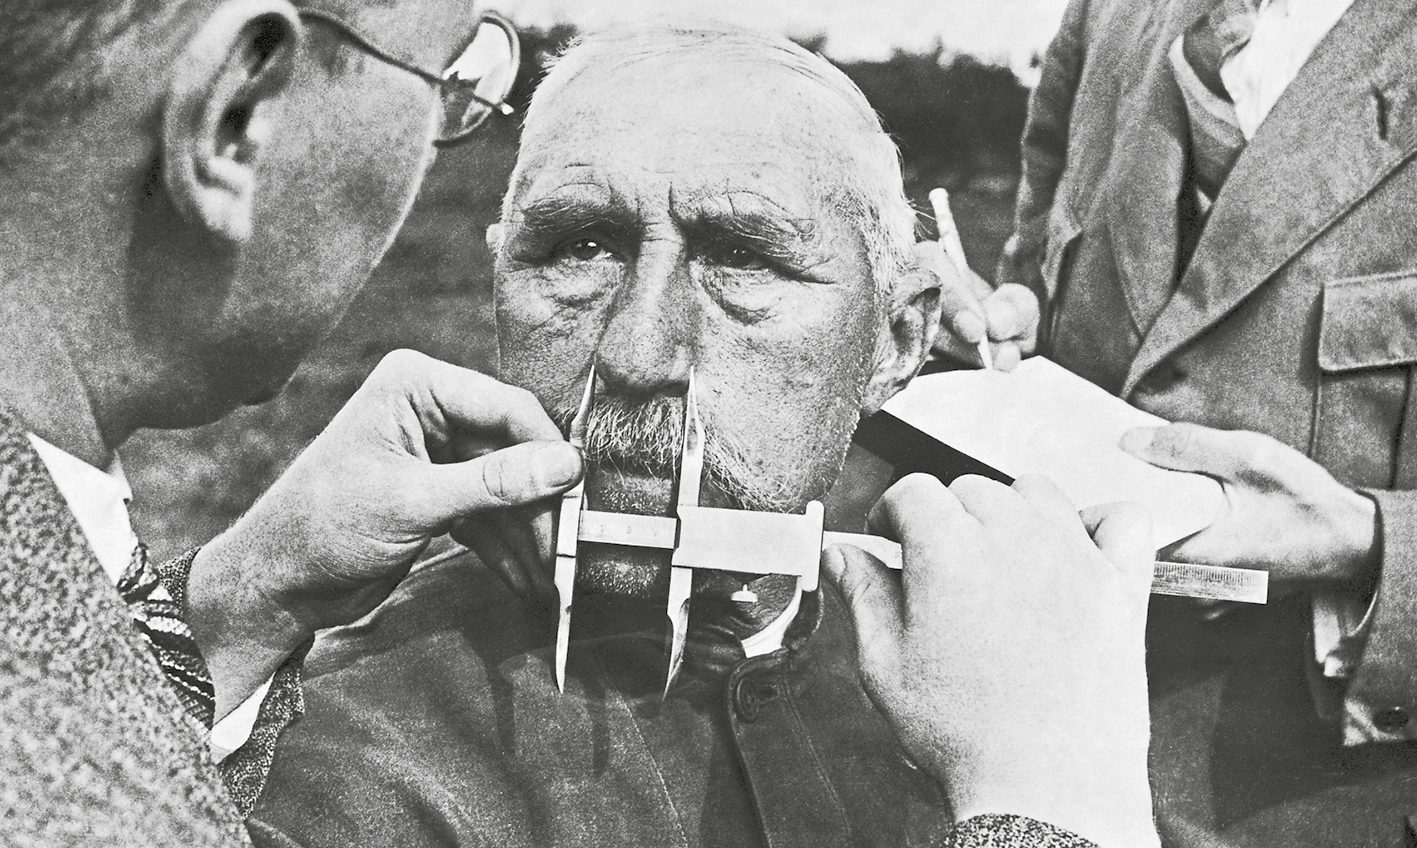 Fotografia em preto e branco. Homem medindo o nariz de um senhor com a ajuda de um instrumento de medição. Atrás, outra pessoa faz anotações.